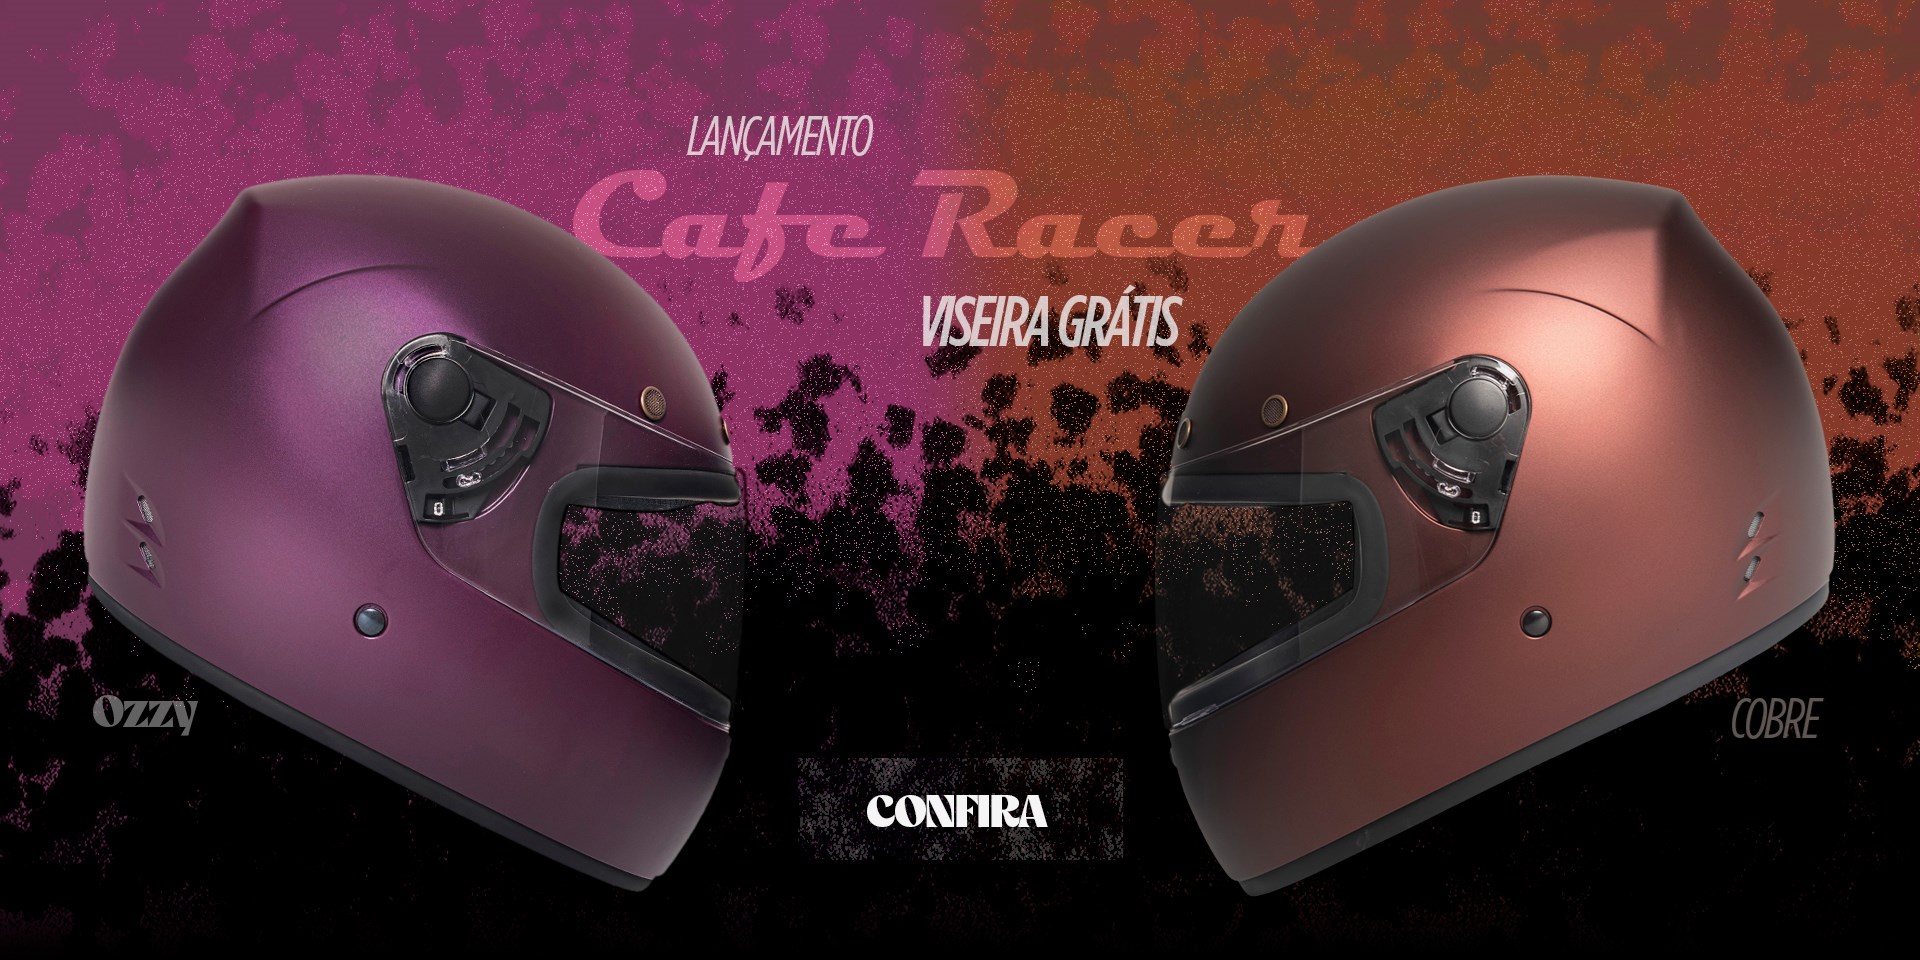 Lançamento Cafe Racer